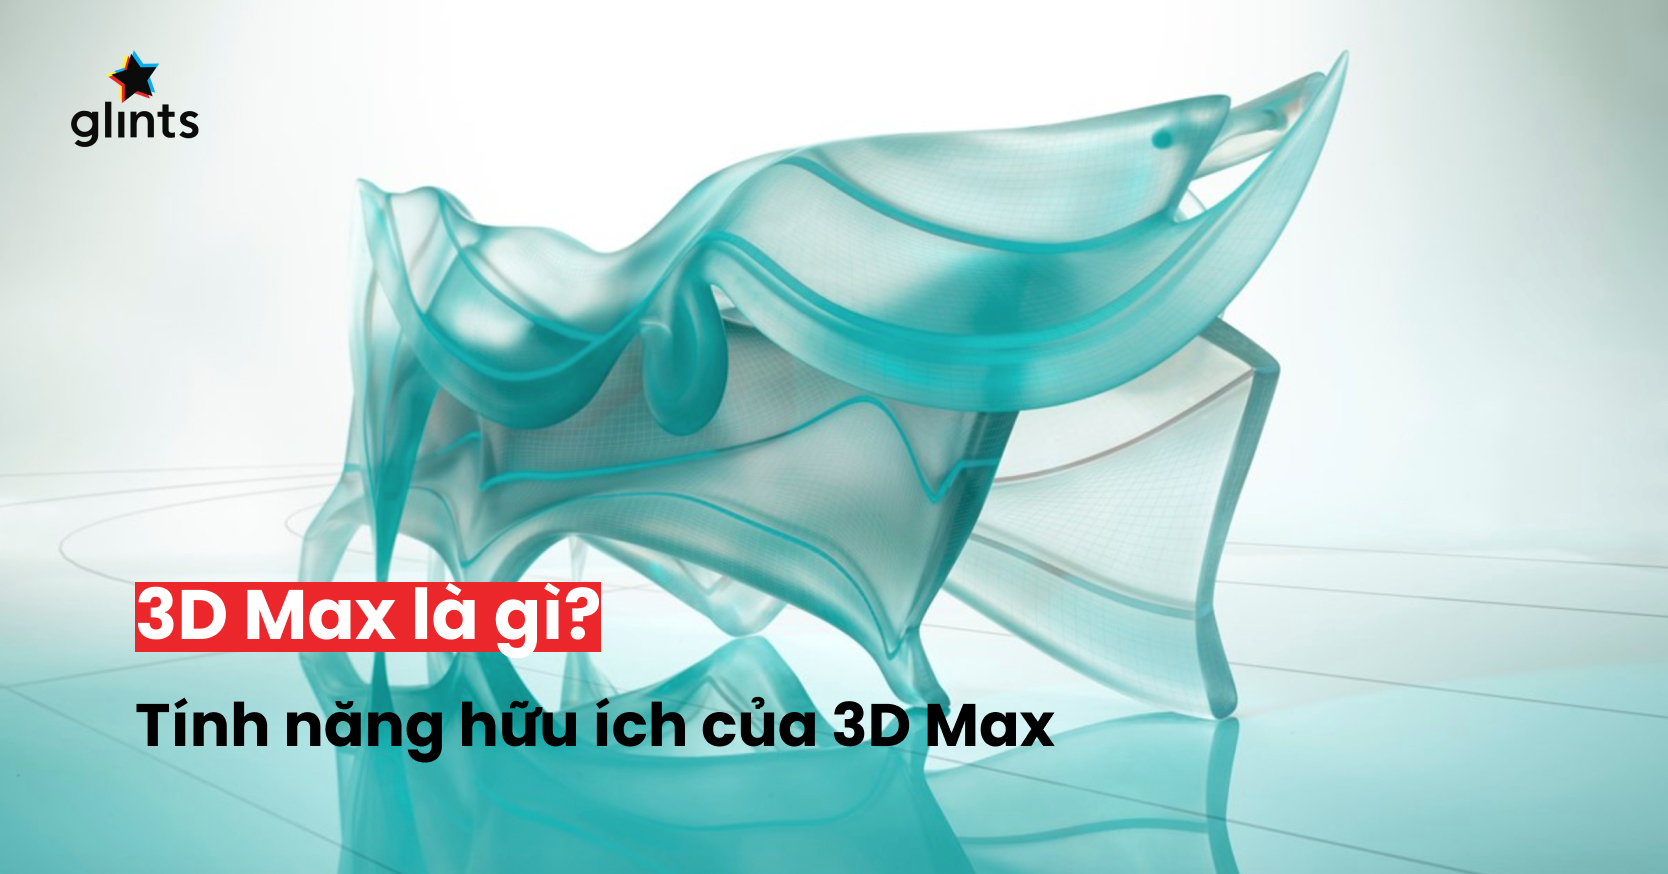 3D Max là phần mềm đồ họa 3D được các nhà thiết kế các ngành công nghiệp khác nhau tin dùng để tạo ra những sản phẩm đẹp mắt và chuyên nghiệp. Bạn muốn tìm hiểu thêm về phần mềm này và khám phá những tác phẩm đẹp mắt được tạo ra từ 3D Max? Hãy xem ngay hình ảnh liên quan đến 3D Max này.